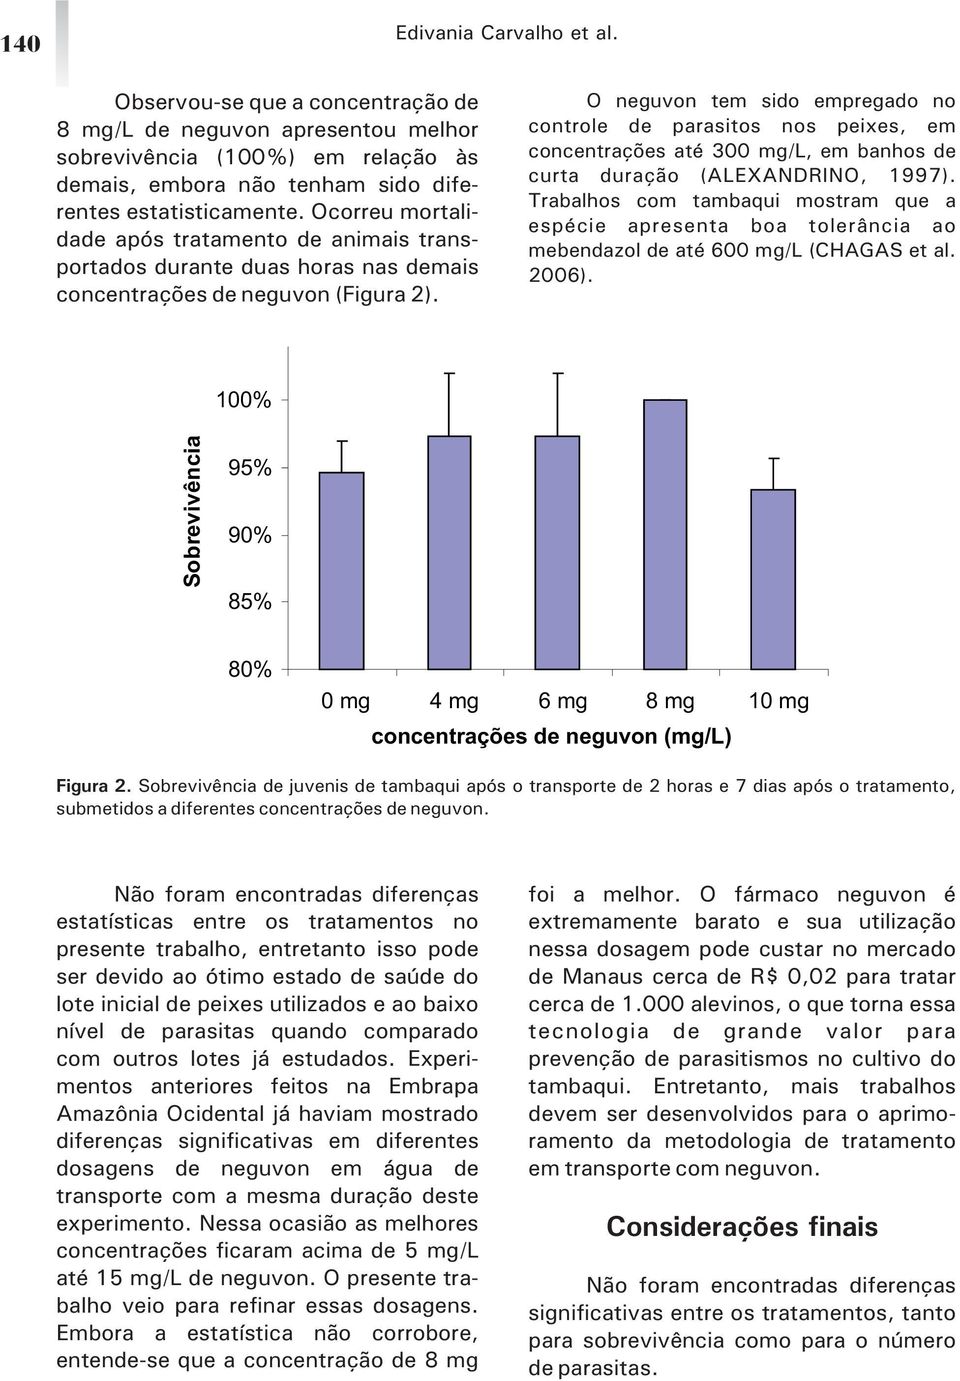 O neguvon tem sido empregado no controle de parasitos nos peixes, em concentrações até 300 mg/l, em banhos de curta duração (ALEXANDRINO, 1997).